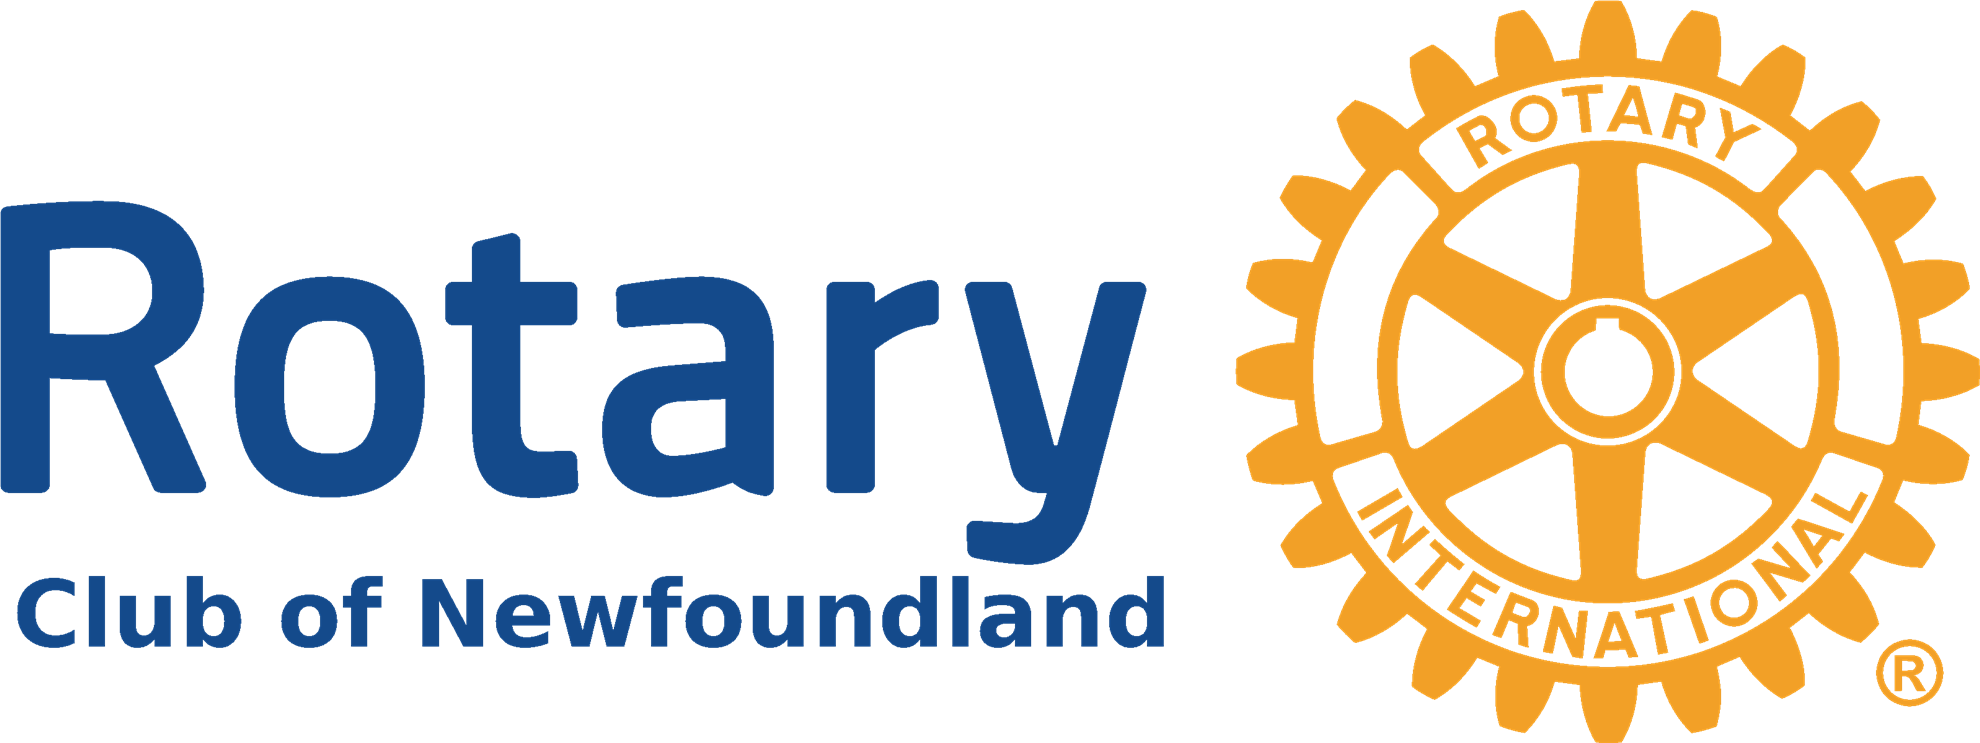 Newfoundland logo